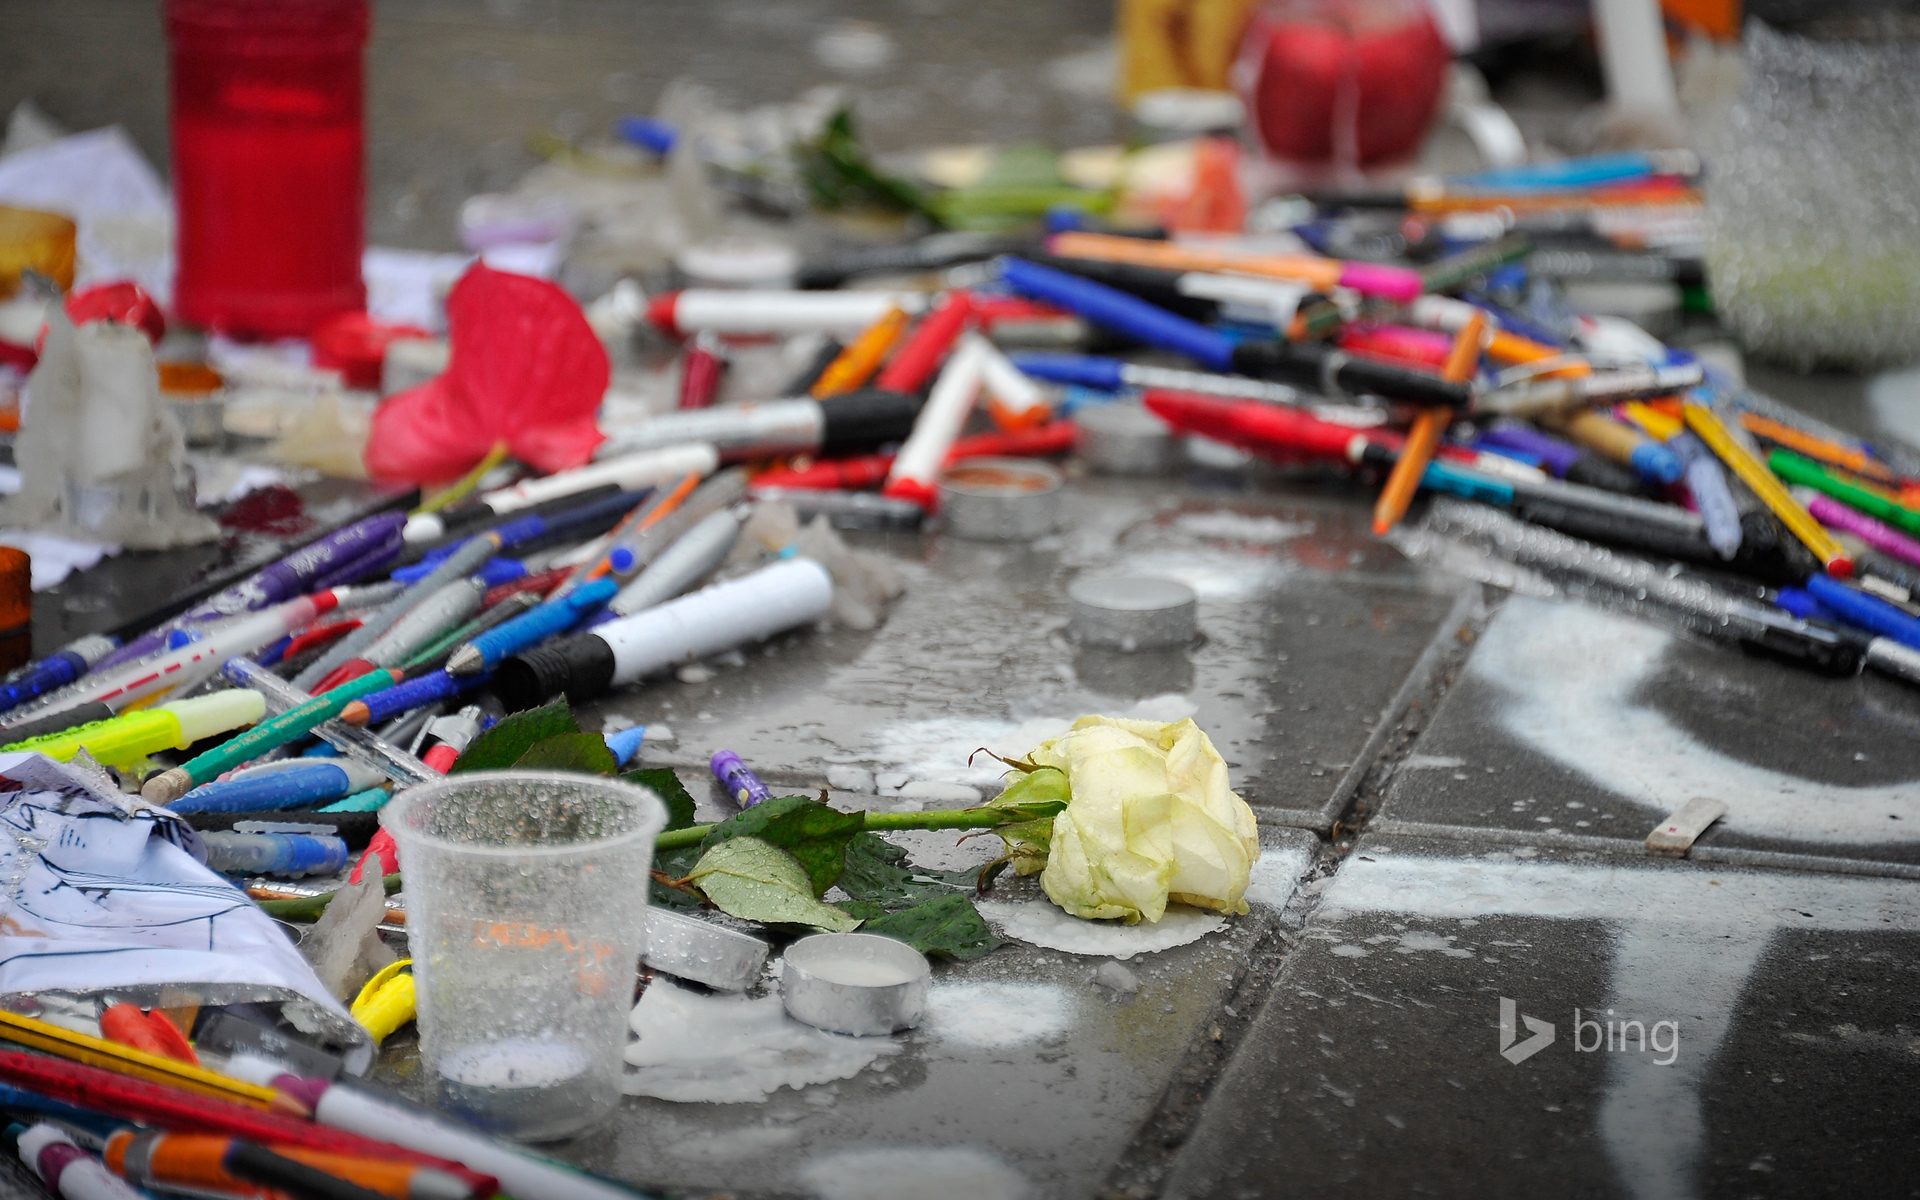 Tributes of candles, pens and flowers at Place de la Republique, Paris, France